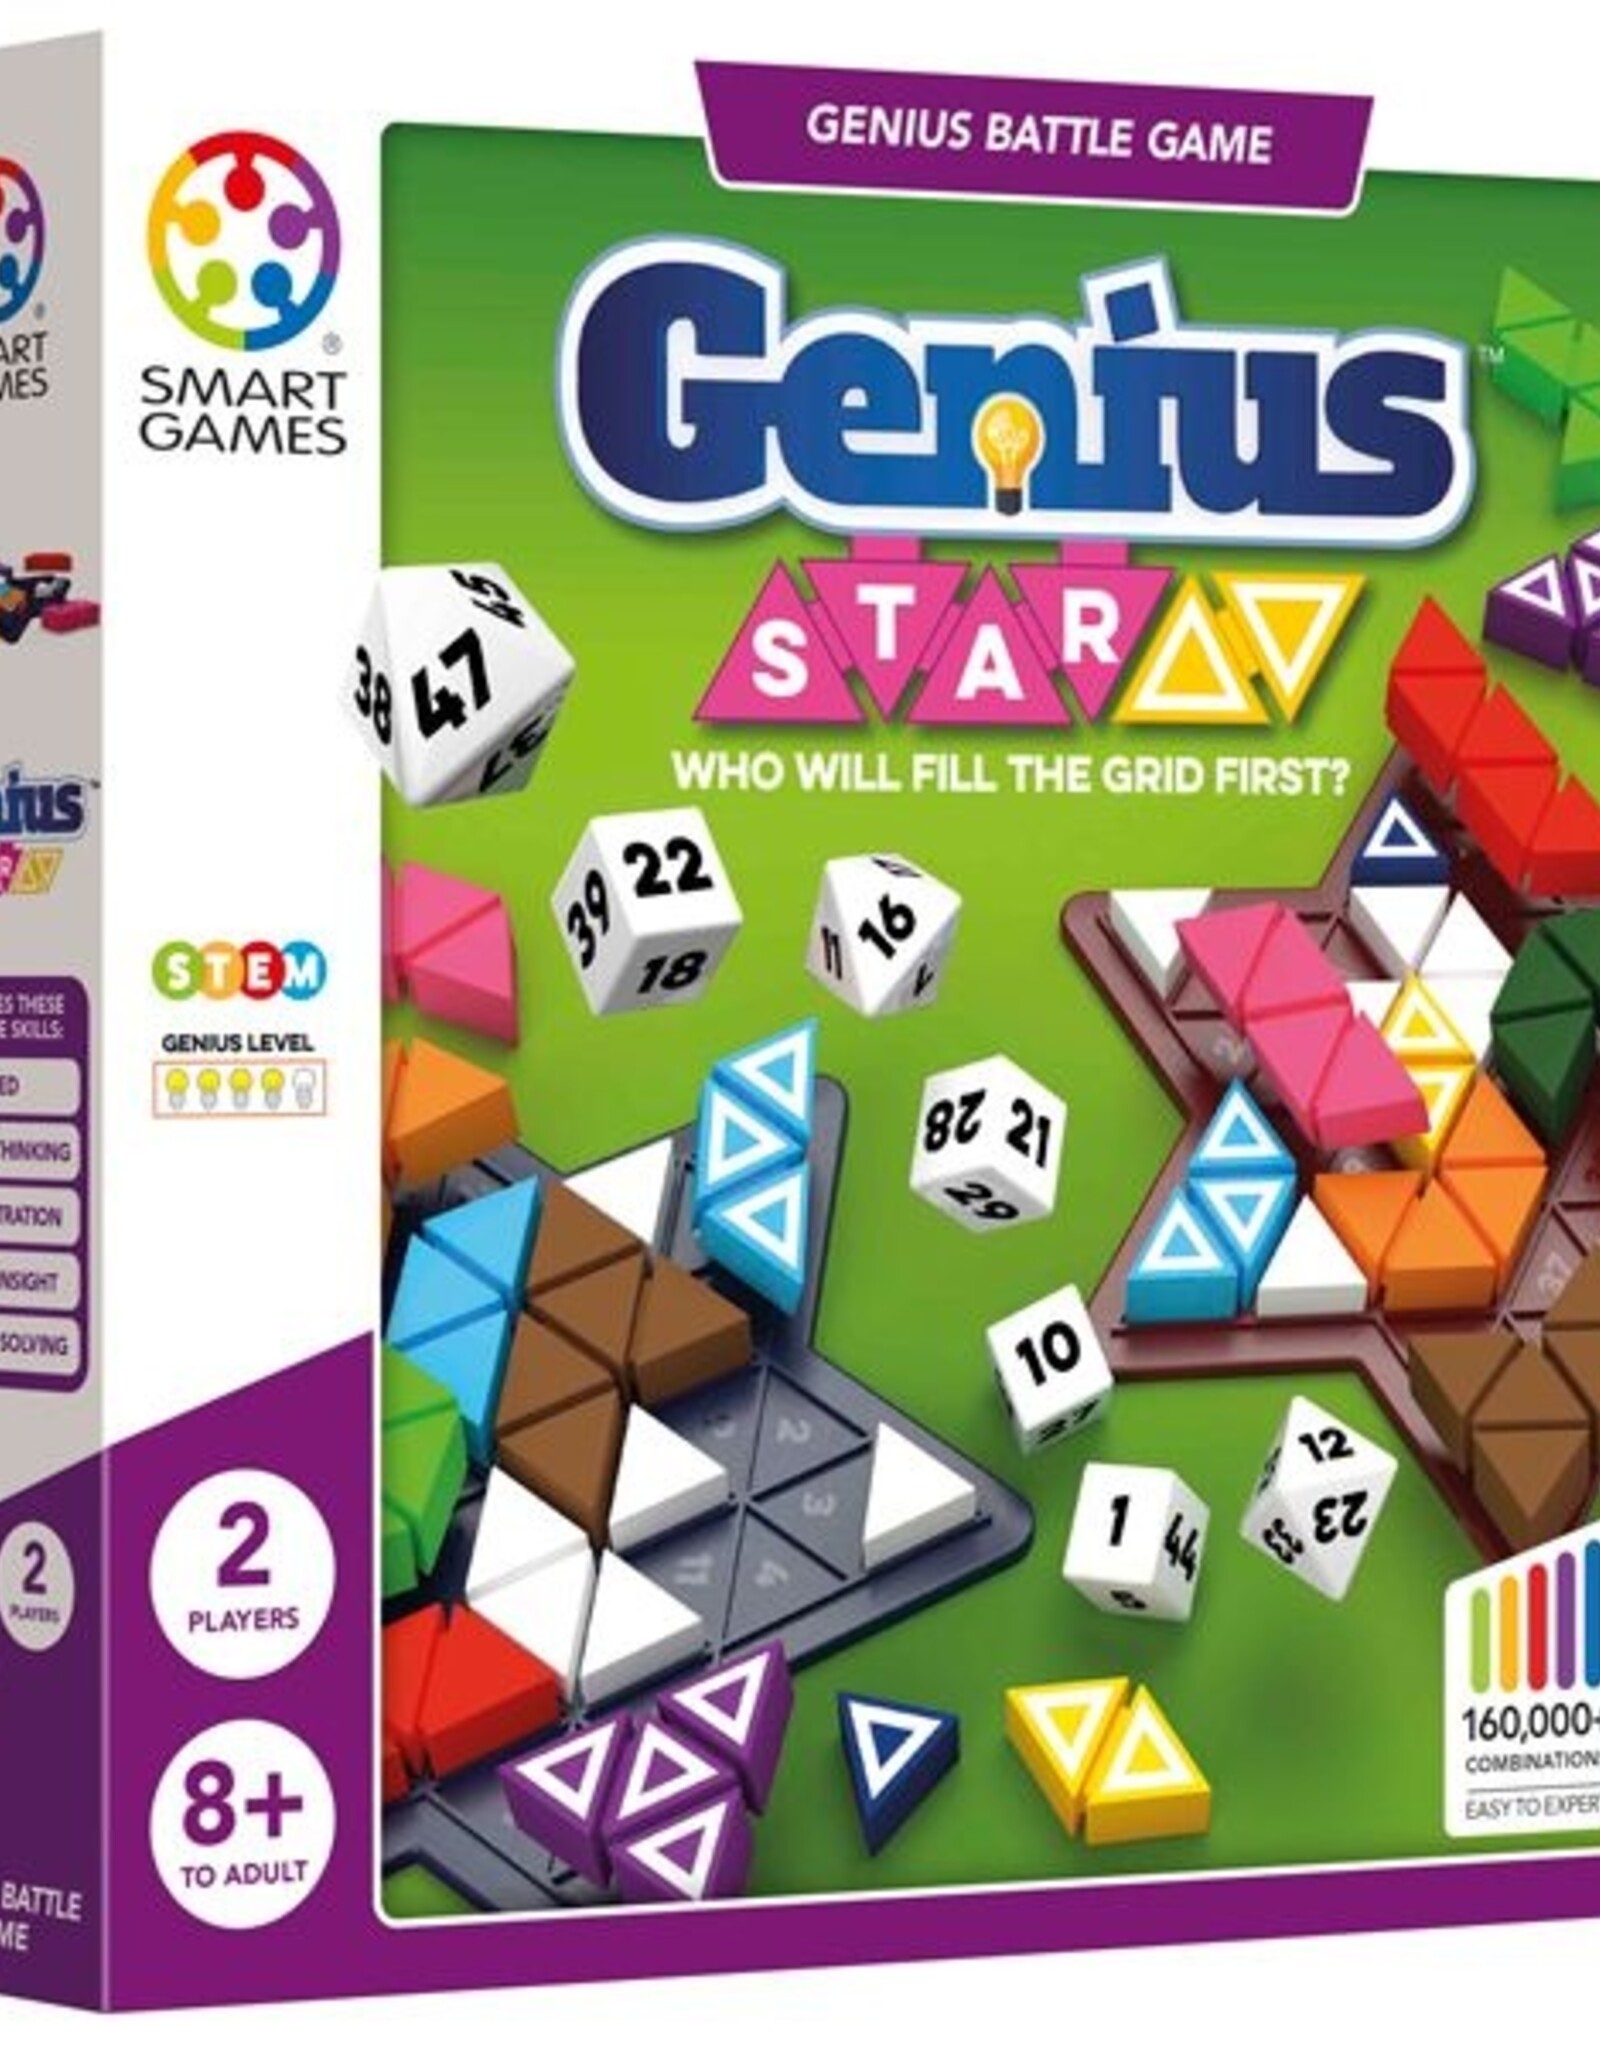 Smart Games Smart Games - Genius Star